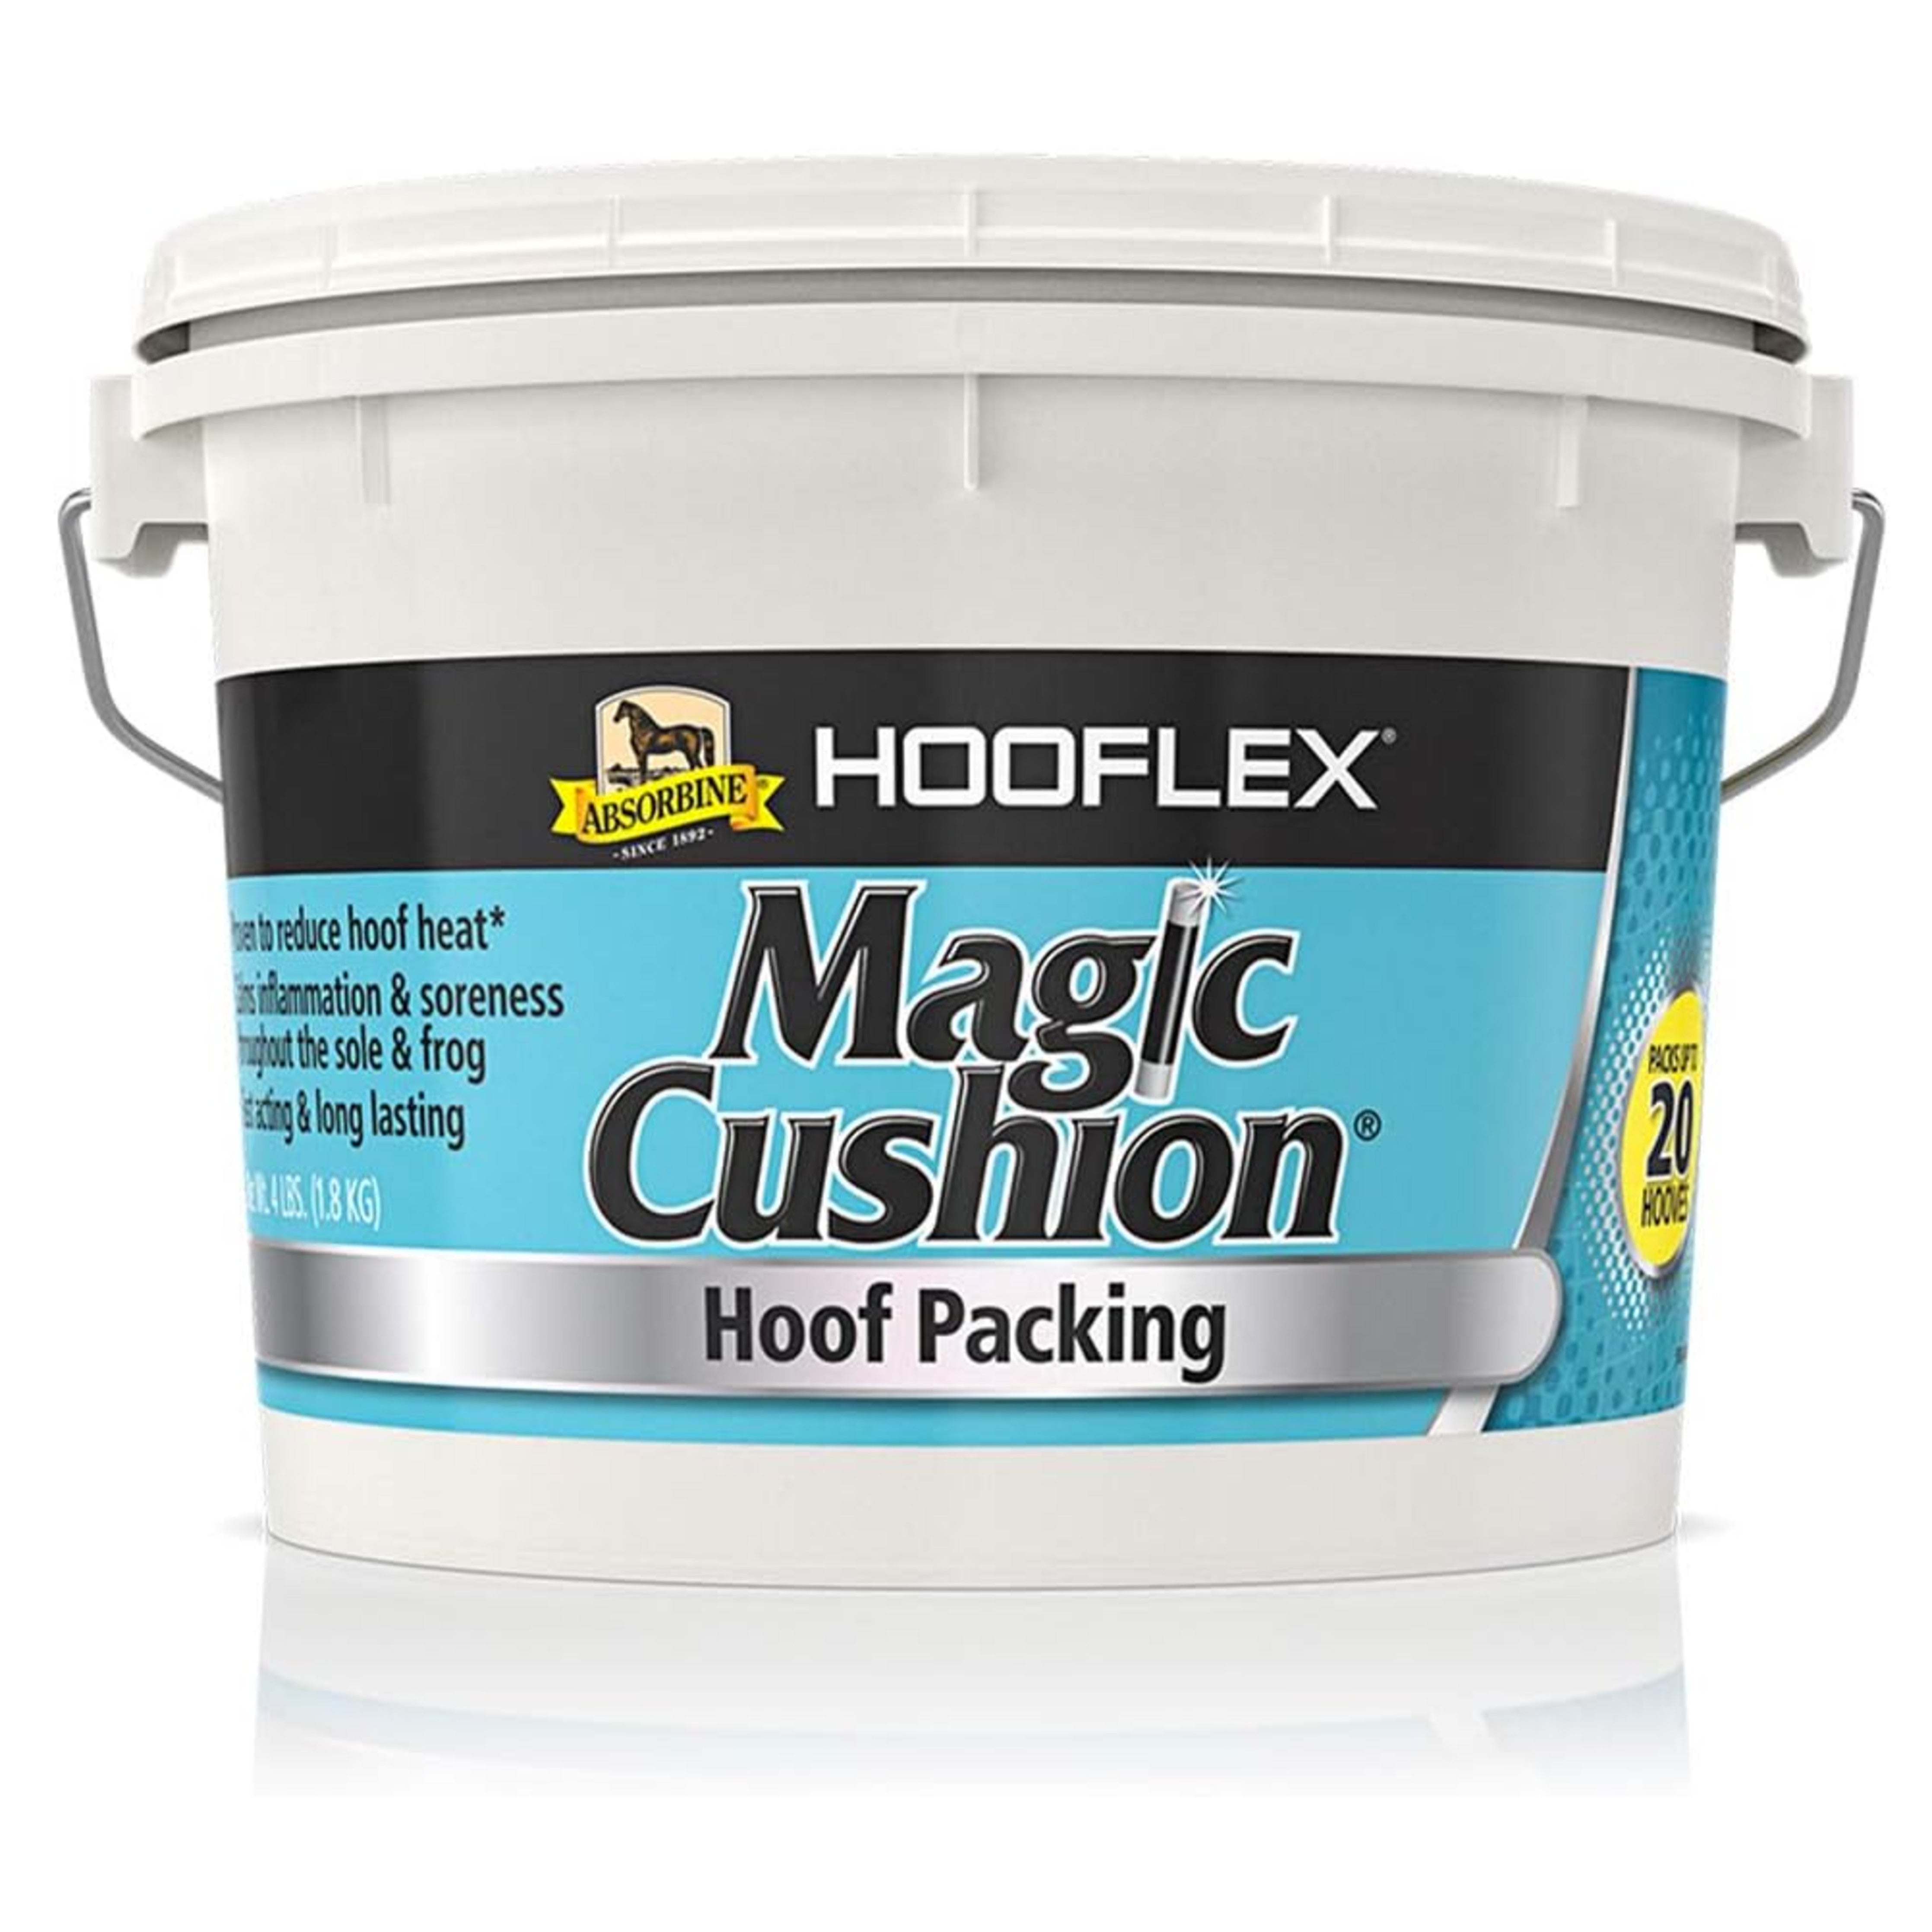 Hooflex Magic Cushion 4 lb